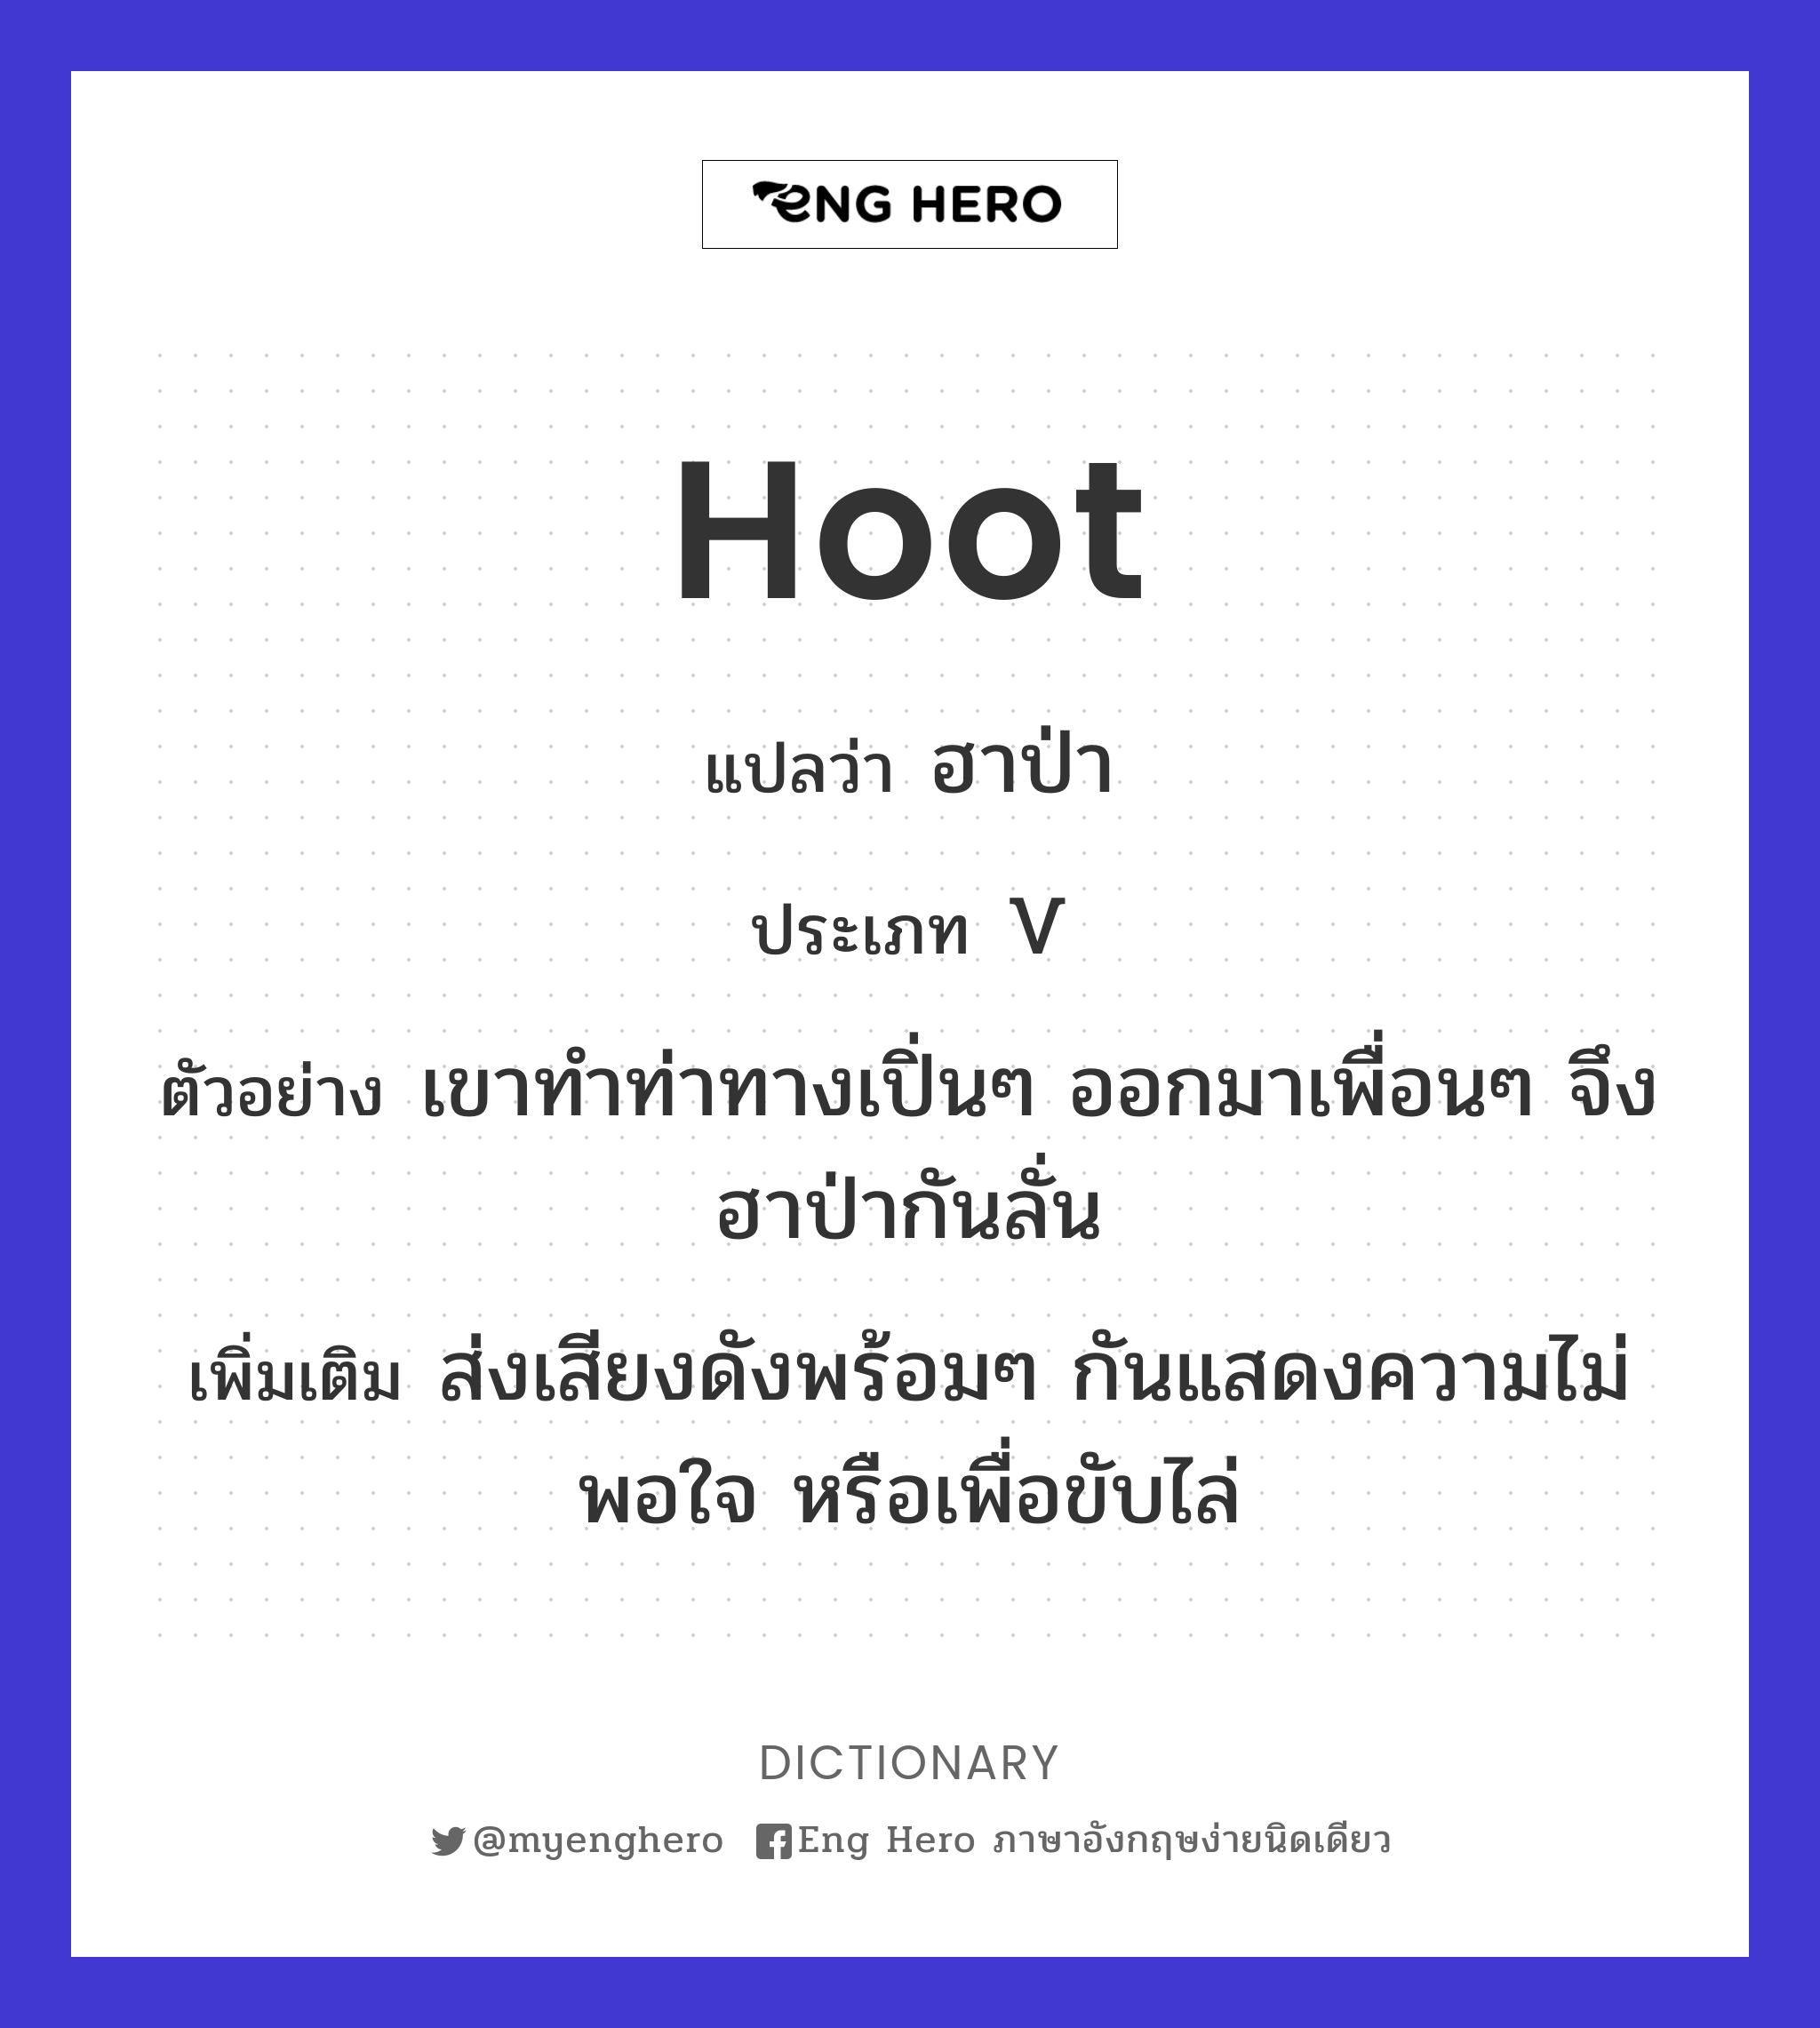 hoot